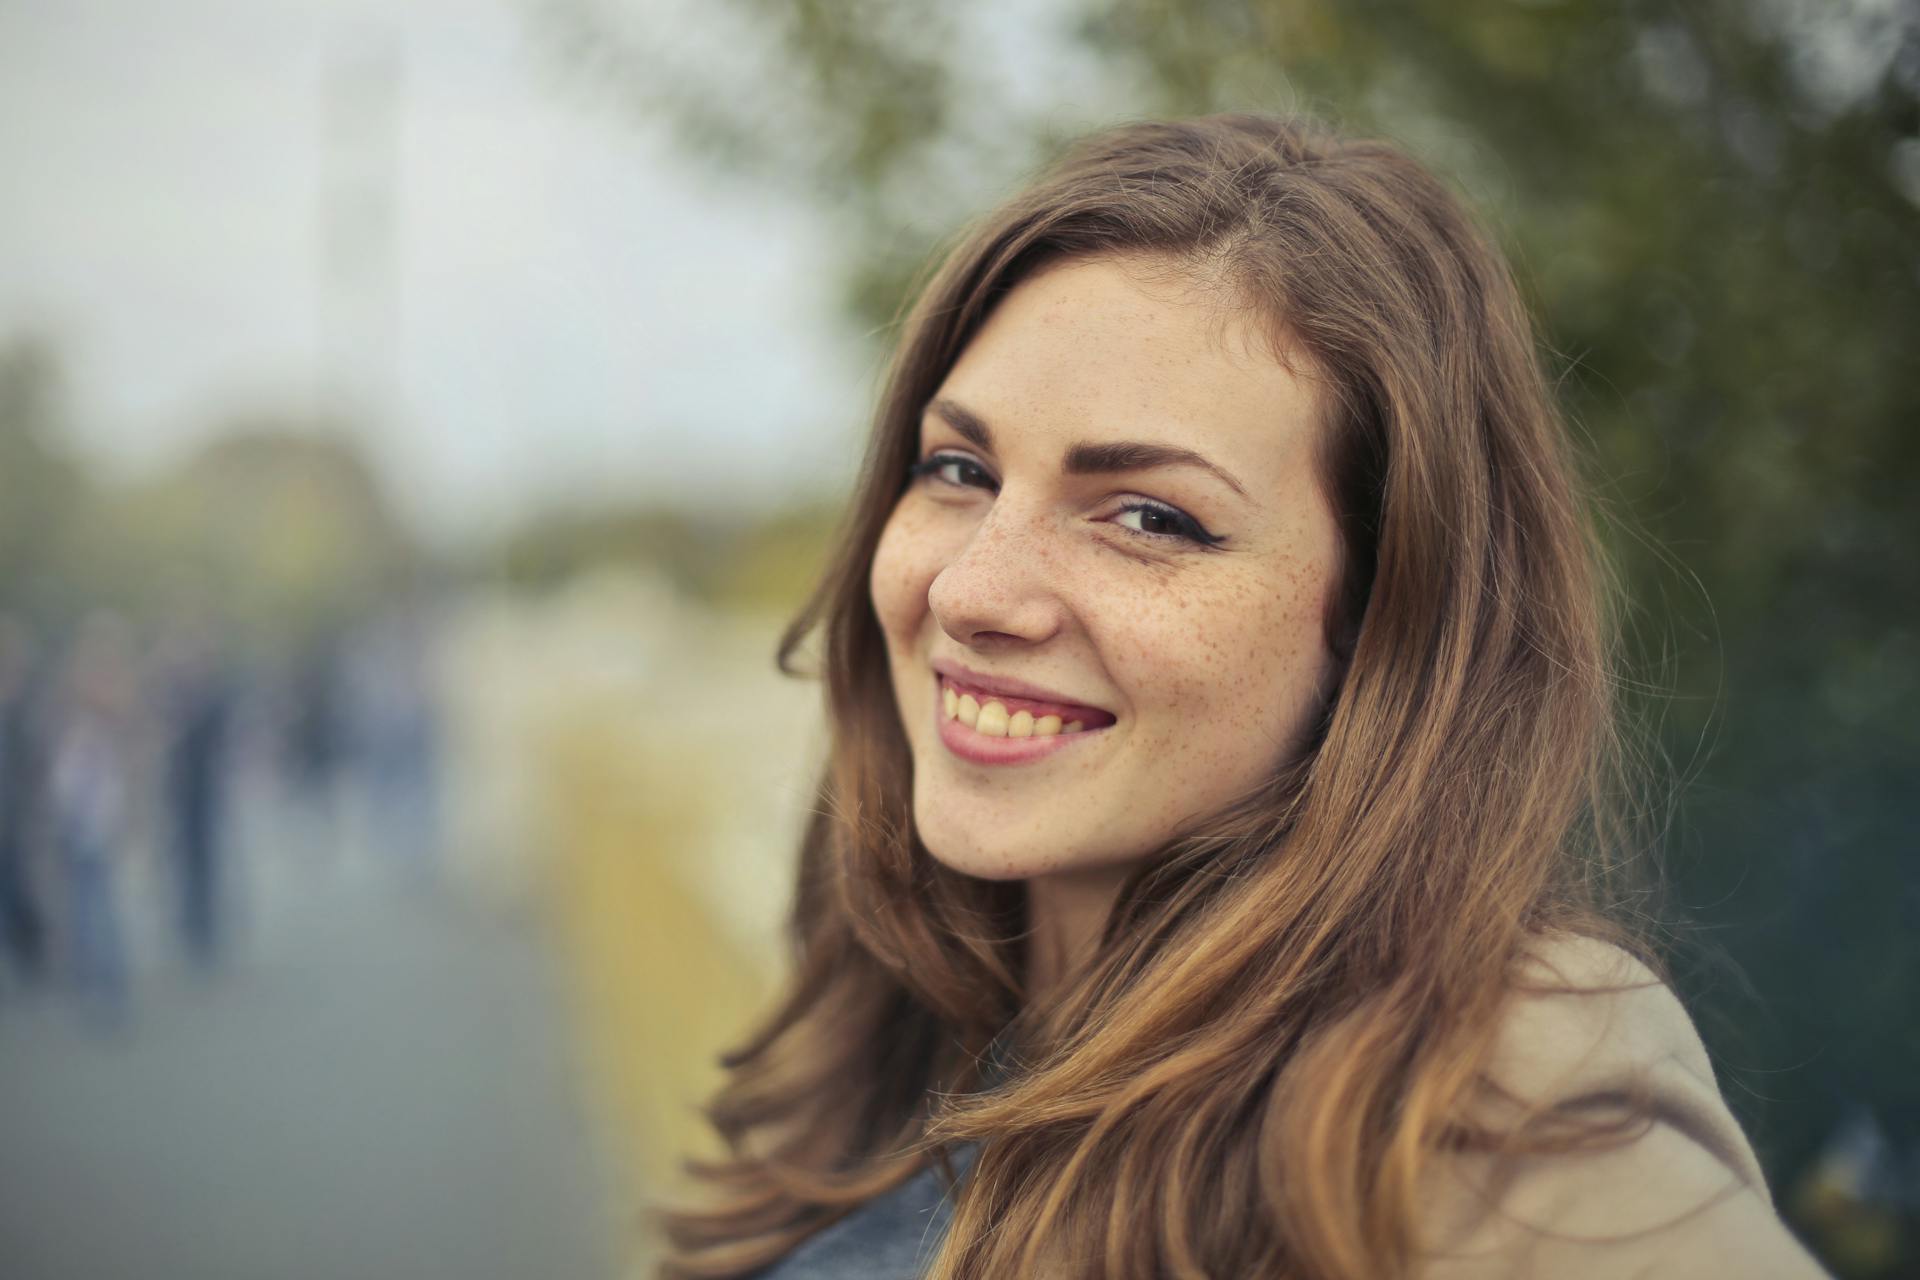 A close-up of a happy woman | Source: Pexels